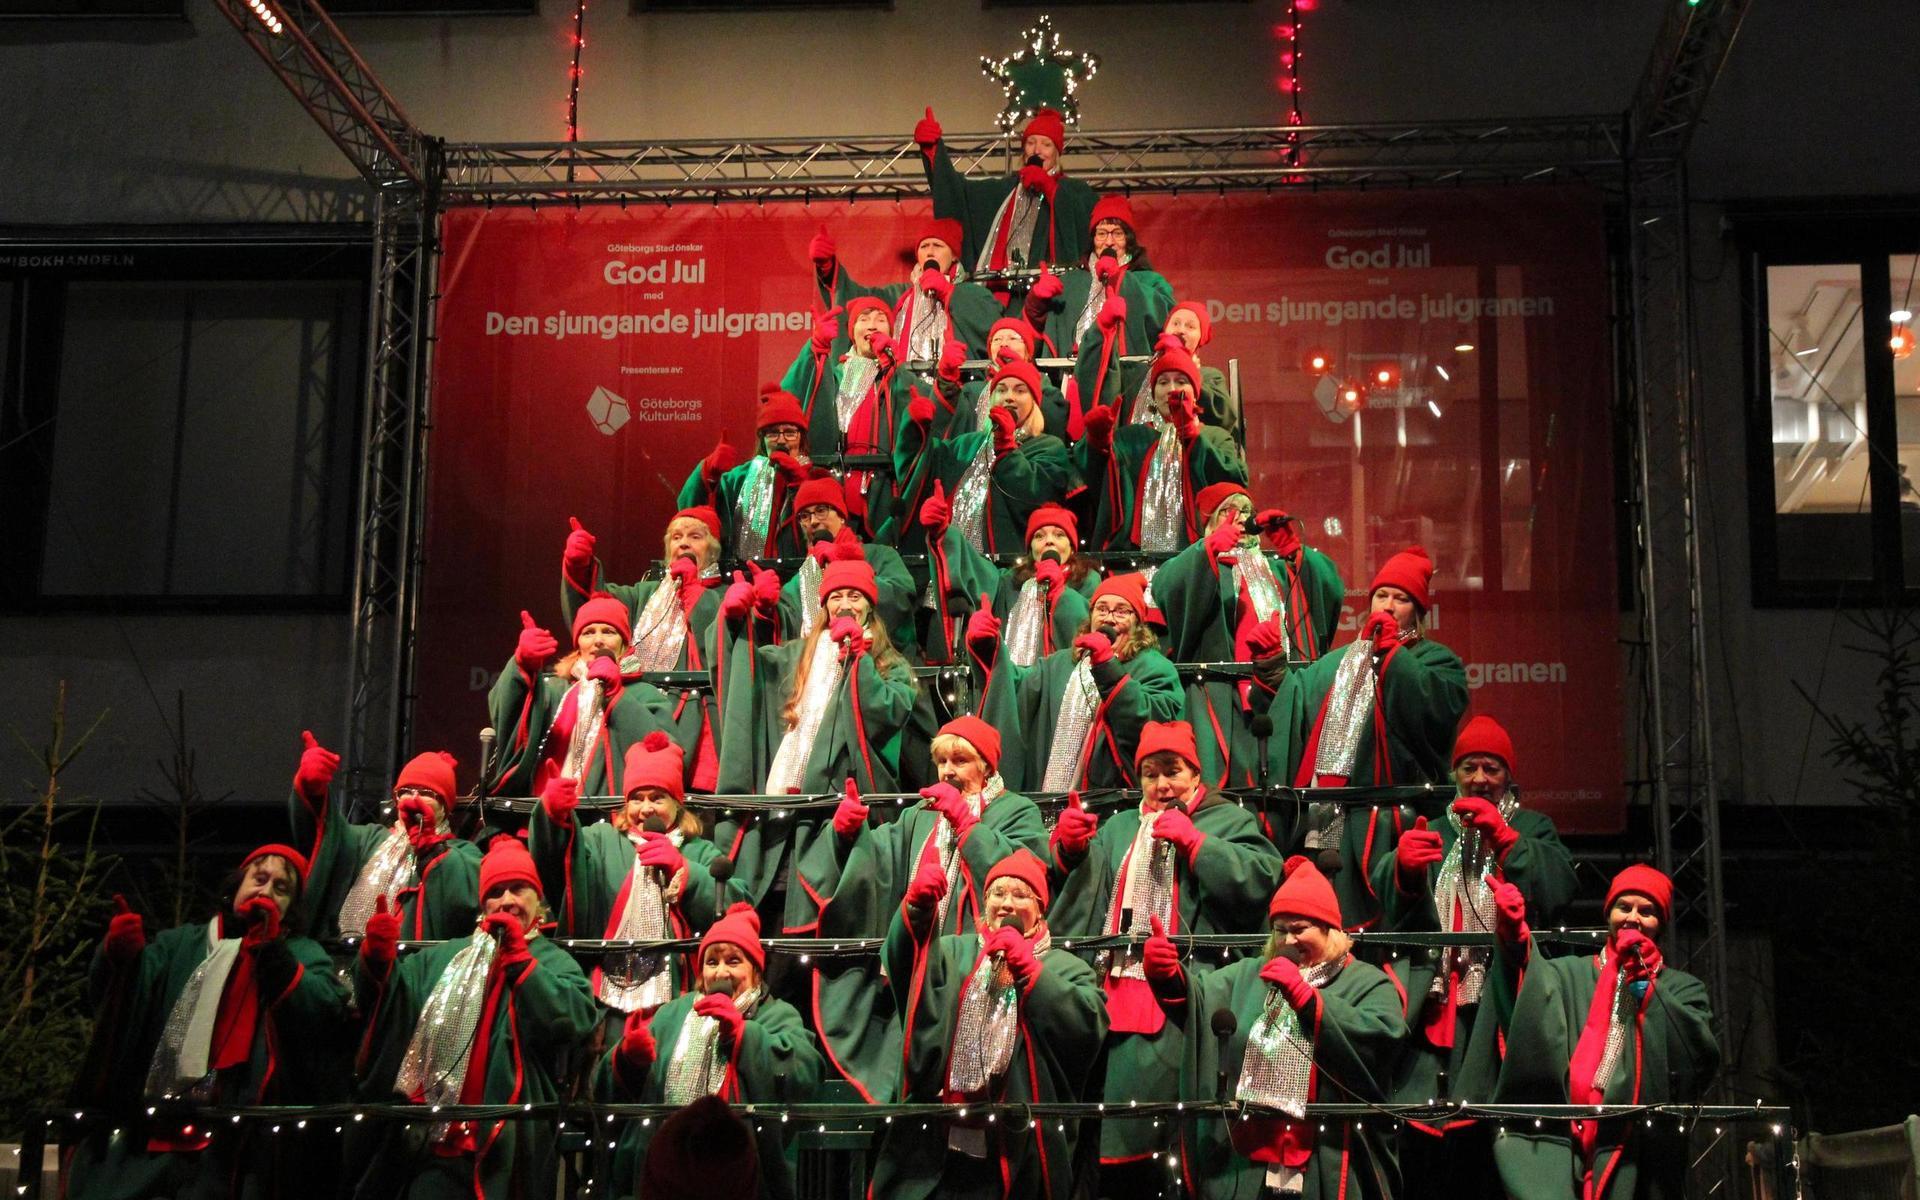 Normalt sett har Gothia show chorus fullt upp såhär års – med den sjungande julgranen vid Kungsportsplatsen, julmarknad i Haga och egna julkonserter. 